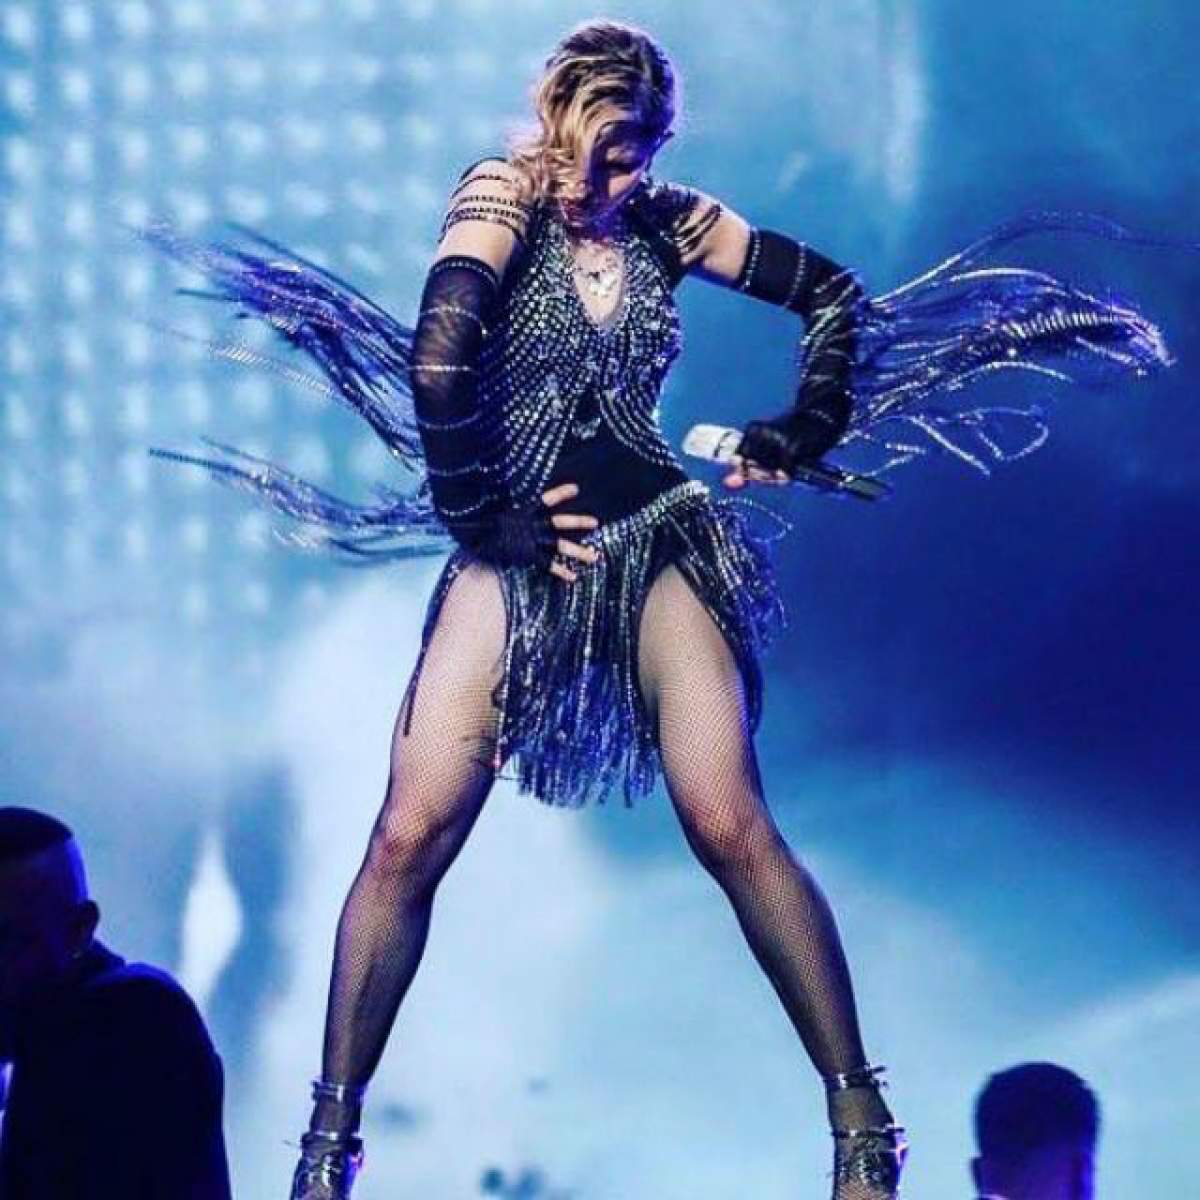 Madonna, în lacrimi pe scenă! Artista a clacat în timpul unui concert, în faţa a zeci de mii de oameni: "O să plâng!"